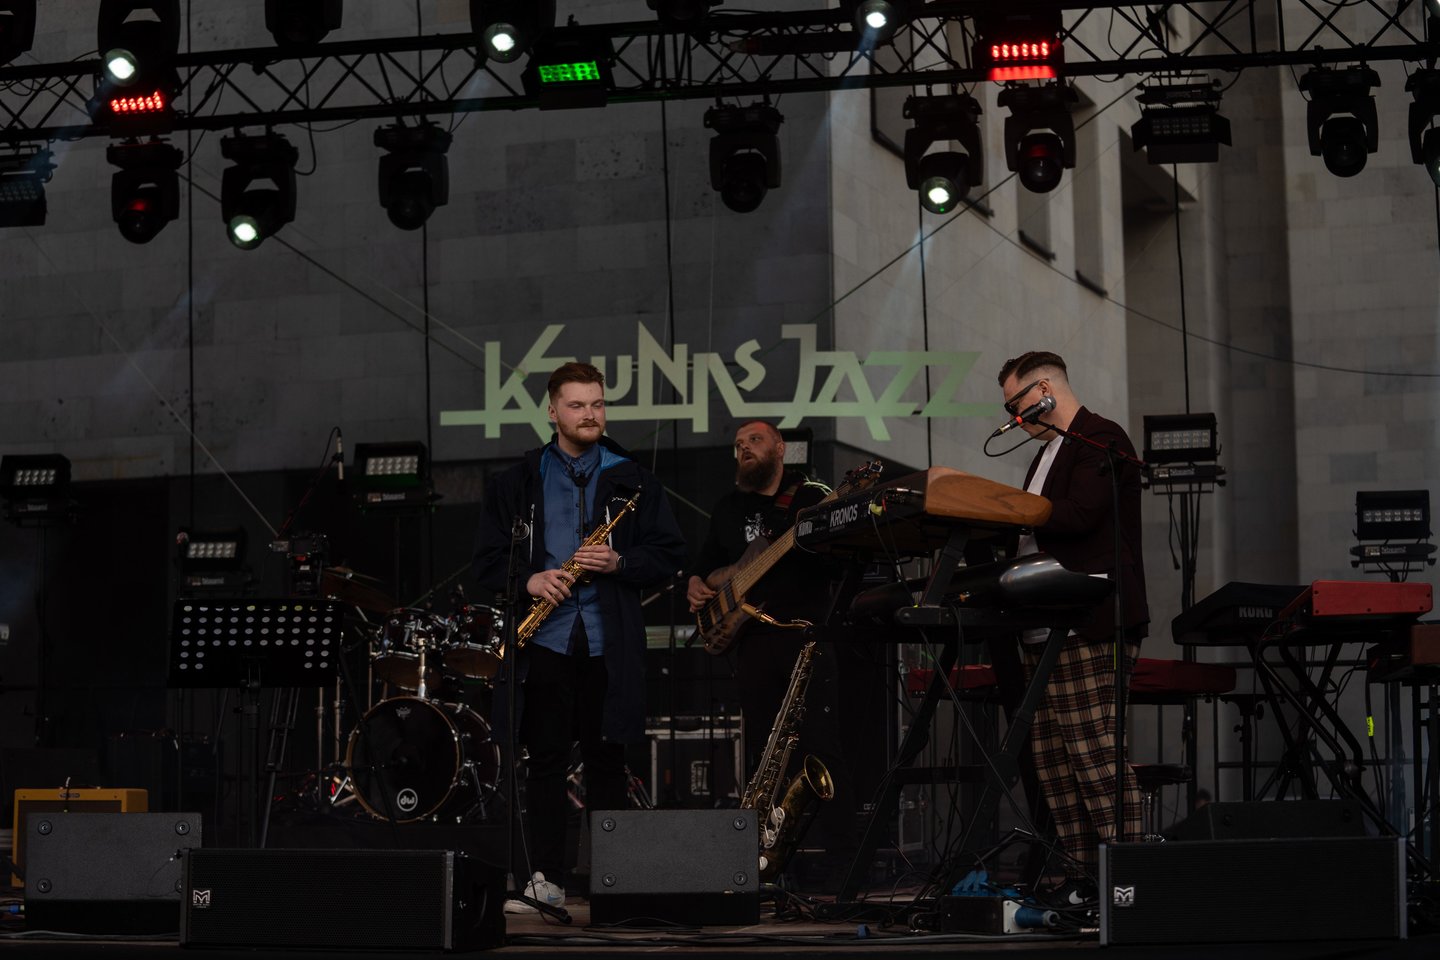 Šeštadienį įvairiose Kauno vietose skambėjo džiazas. Įsisiūbuojantis festivalis „Kaunas Jazz“ kauniečius ir miesto svečius pakvietė klausytis improvizacinės muzikos Nepriklausomybės aikštėje, kultūros bare GODO, scenose, įsikūrusiose prie Laisvės al. 68 ir prie Vasario 16-osios g. Svarbiausi koncertai šeštadienio vakarą vyko Nacionalinio Kauno dramos teatro didžiojoje scenoje. Joje džiazavo Egidijus Buožis ir Zara McFarlane.<br>G.Bitvunsko nuotr.